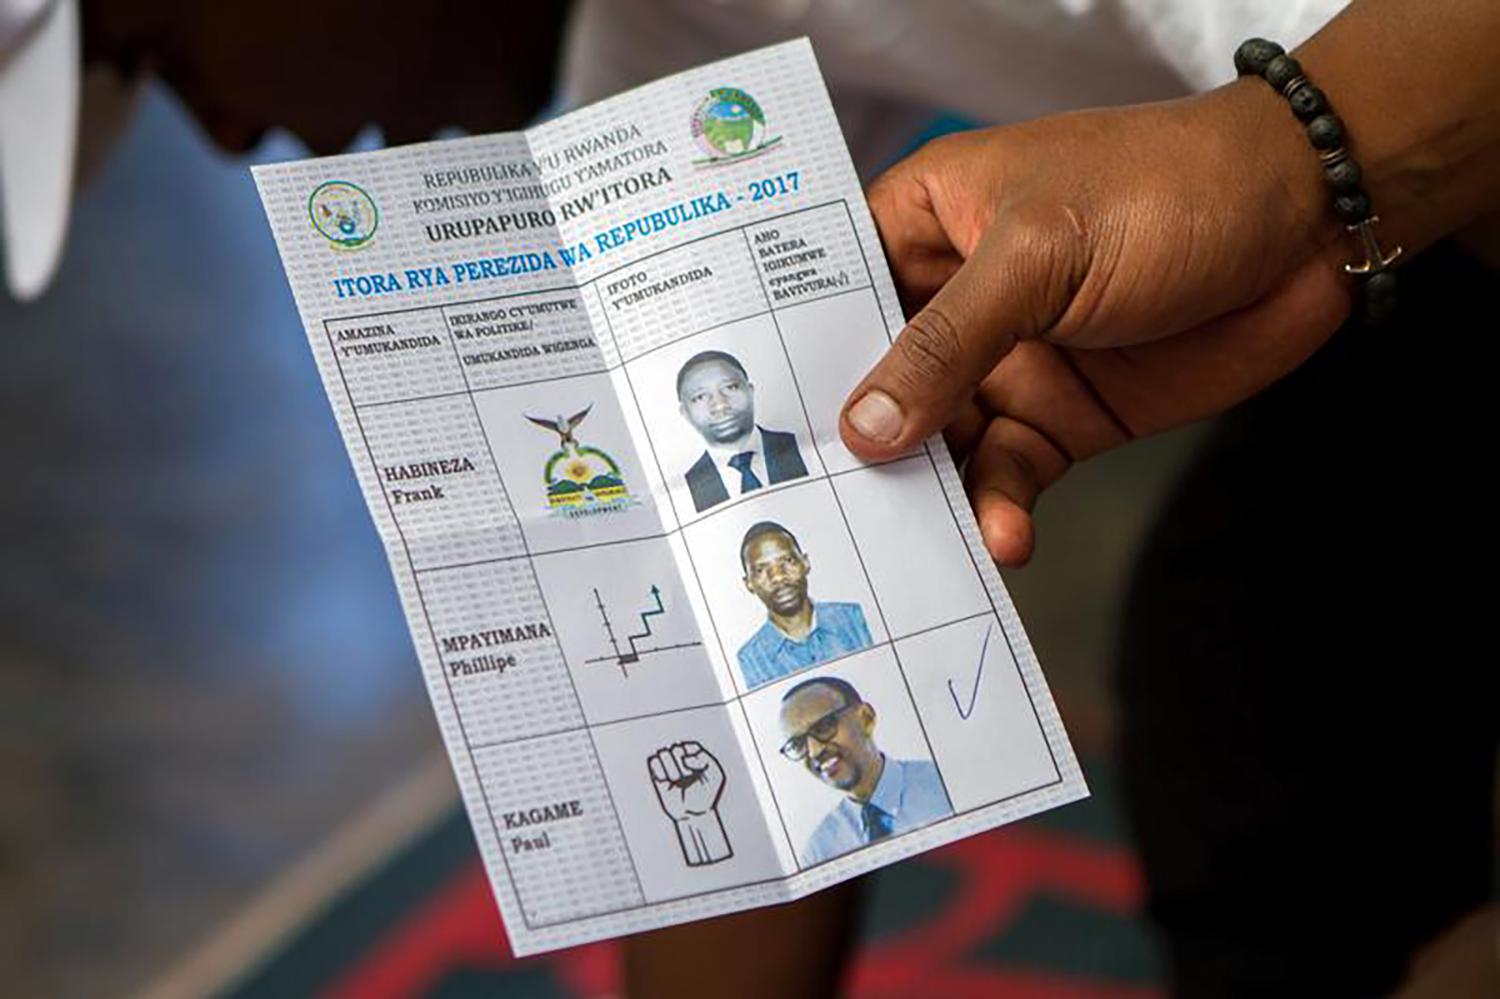 Un membre du personnel du scrutin présente un bulletin de vote dans un centre de vote à Kigali, au Rwanda, le 4 août 2017.